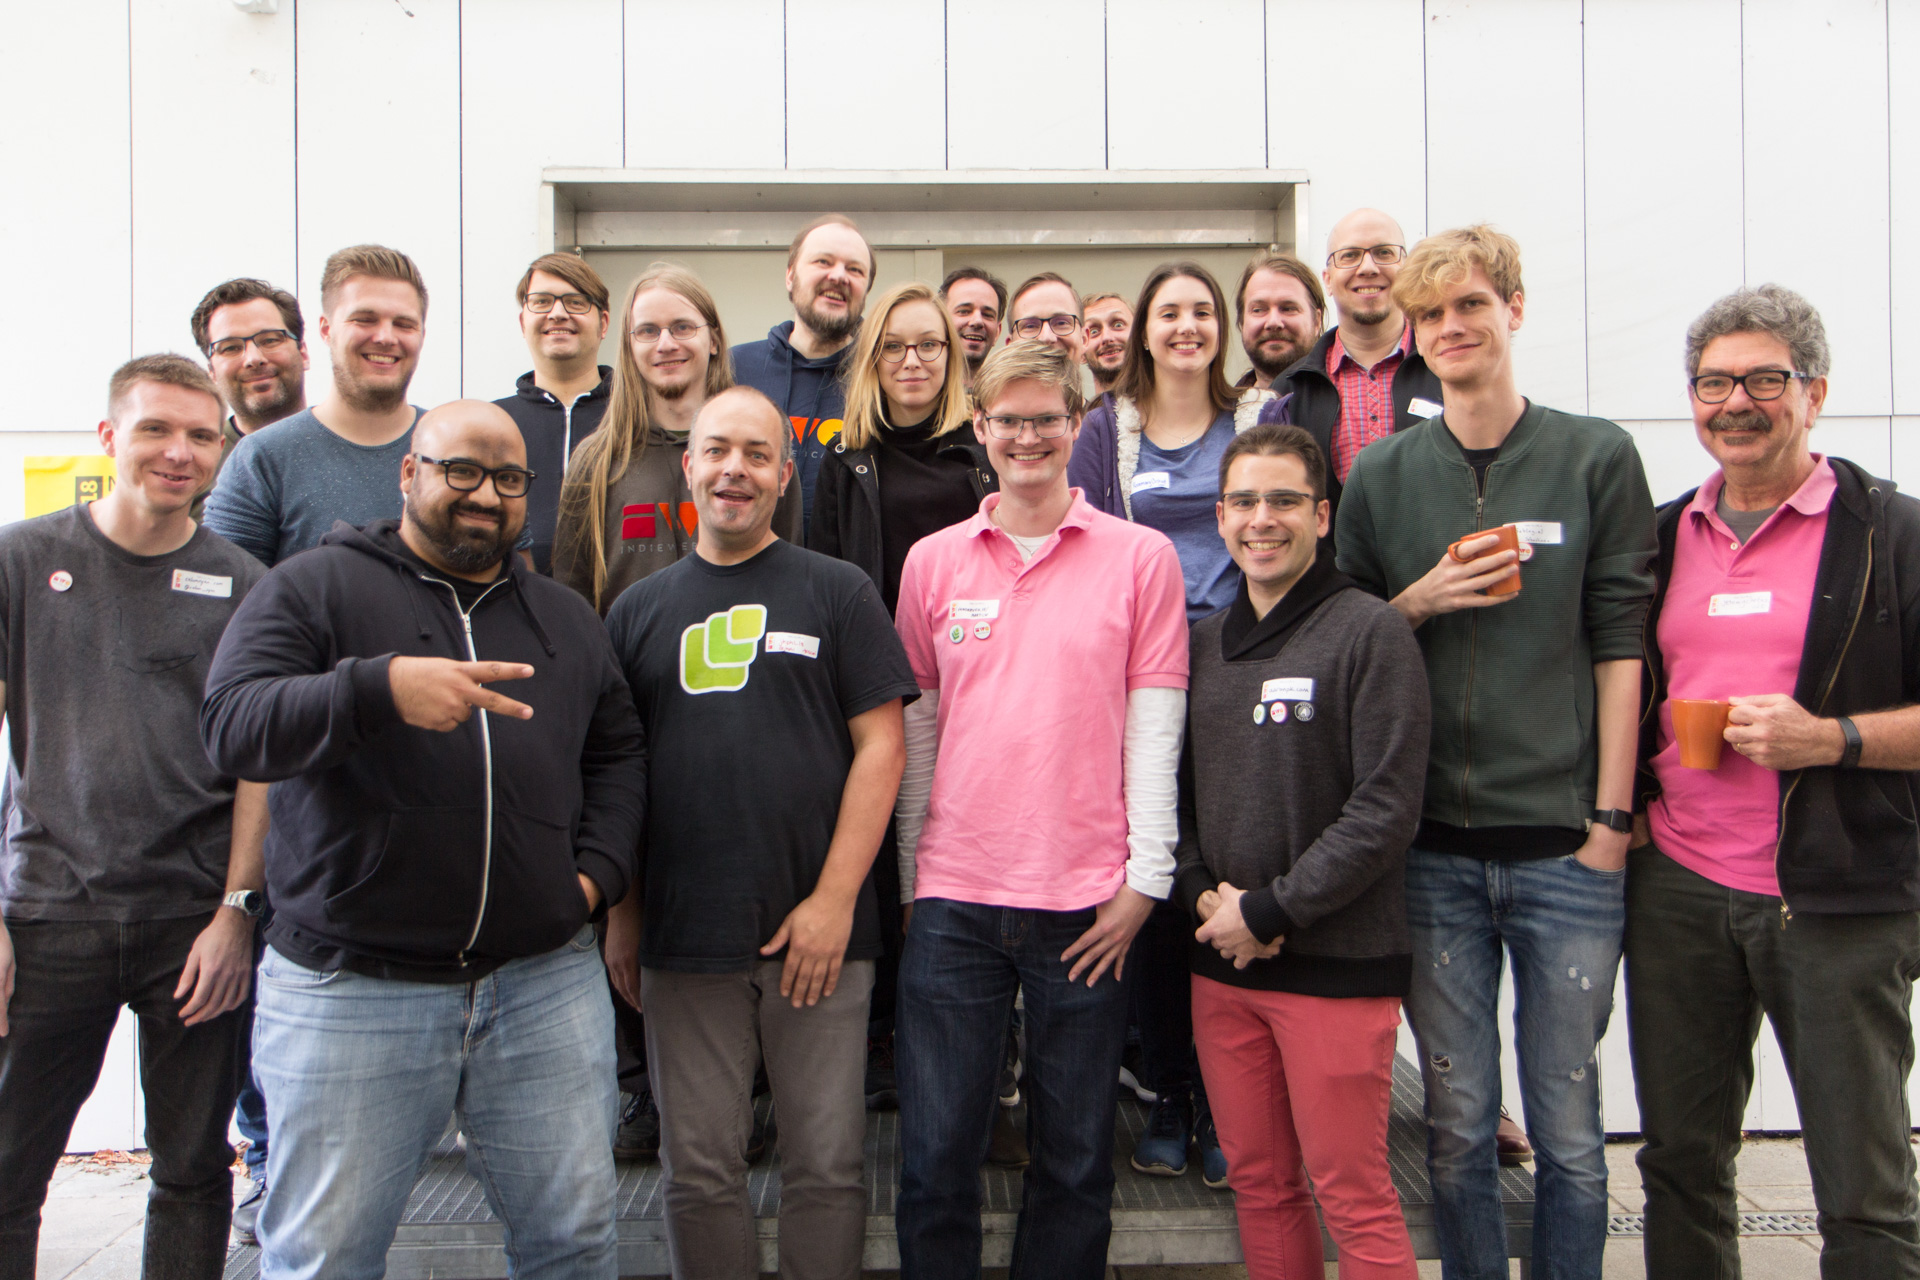 IndieWebCamp Nuremberg 2018 group photo